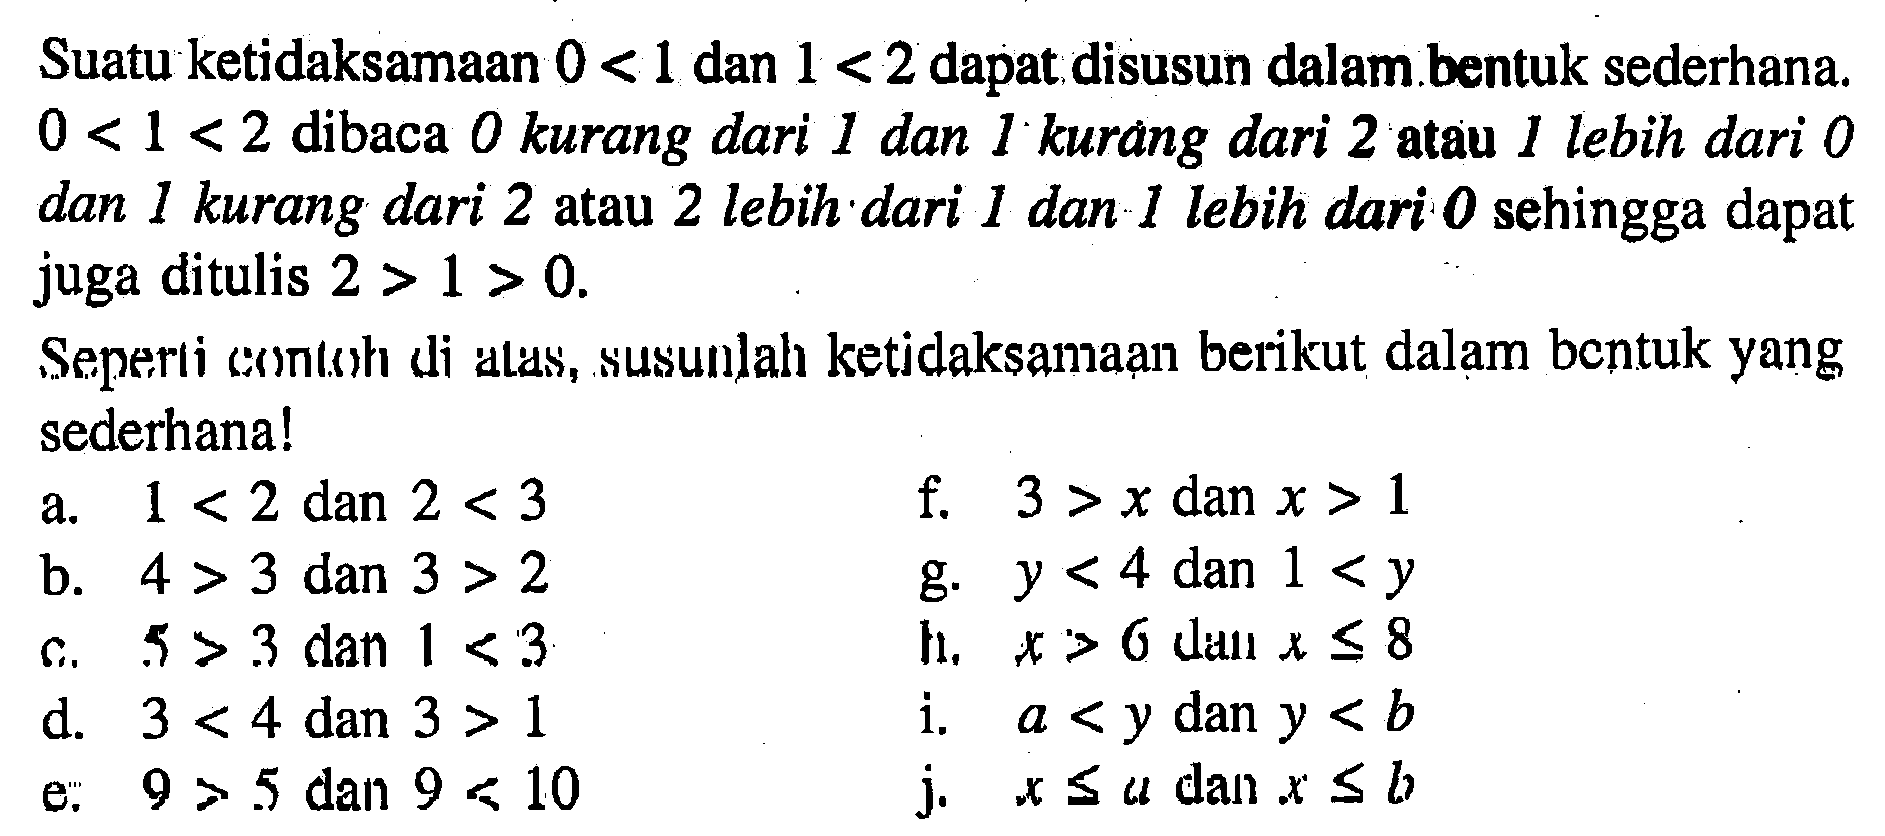 Suatu ketidaksamaan 0 < 1 dan 1 < 2 dapat disusun dalam bentuk sederhana 0 < 1 < 2 dibaca 0 kurang dari 1 dan 1 kurang dari 2 atau 1 lebih dari 0 dan 1 kurang dari 2 atau 2 lebih dari 1 dan 1 lebih dari 0 sehingga dapat juga ditulis 2 > 1 > 0. Seperti contoh di alas, susunlah ketidaksamaan berikut dalam bentuk yang sederhana! a. 1 < 2 dan 2 < 3 f. 3 > x dan x > 1 b. 4 > 3 dan 3 > 2 g. y < 4 dan 1 < y c. 5 > 3 dan 1 < 3 g. x > 6 dan x < 8 d. 3 < 4 dan 3 > 1 i. a < y dan y < b e. 9 > 5 dan 9 < 10 j. x <= a dlan x <= b